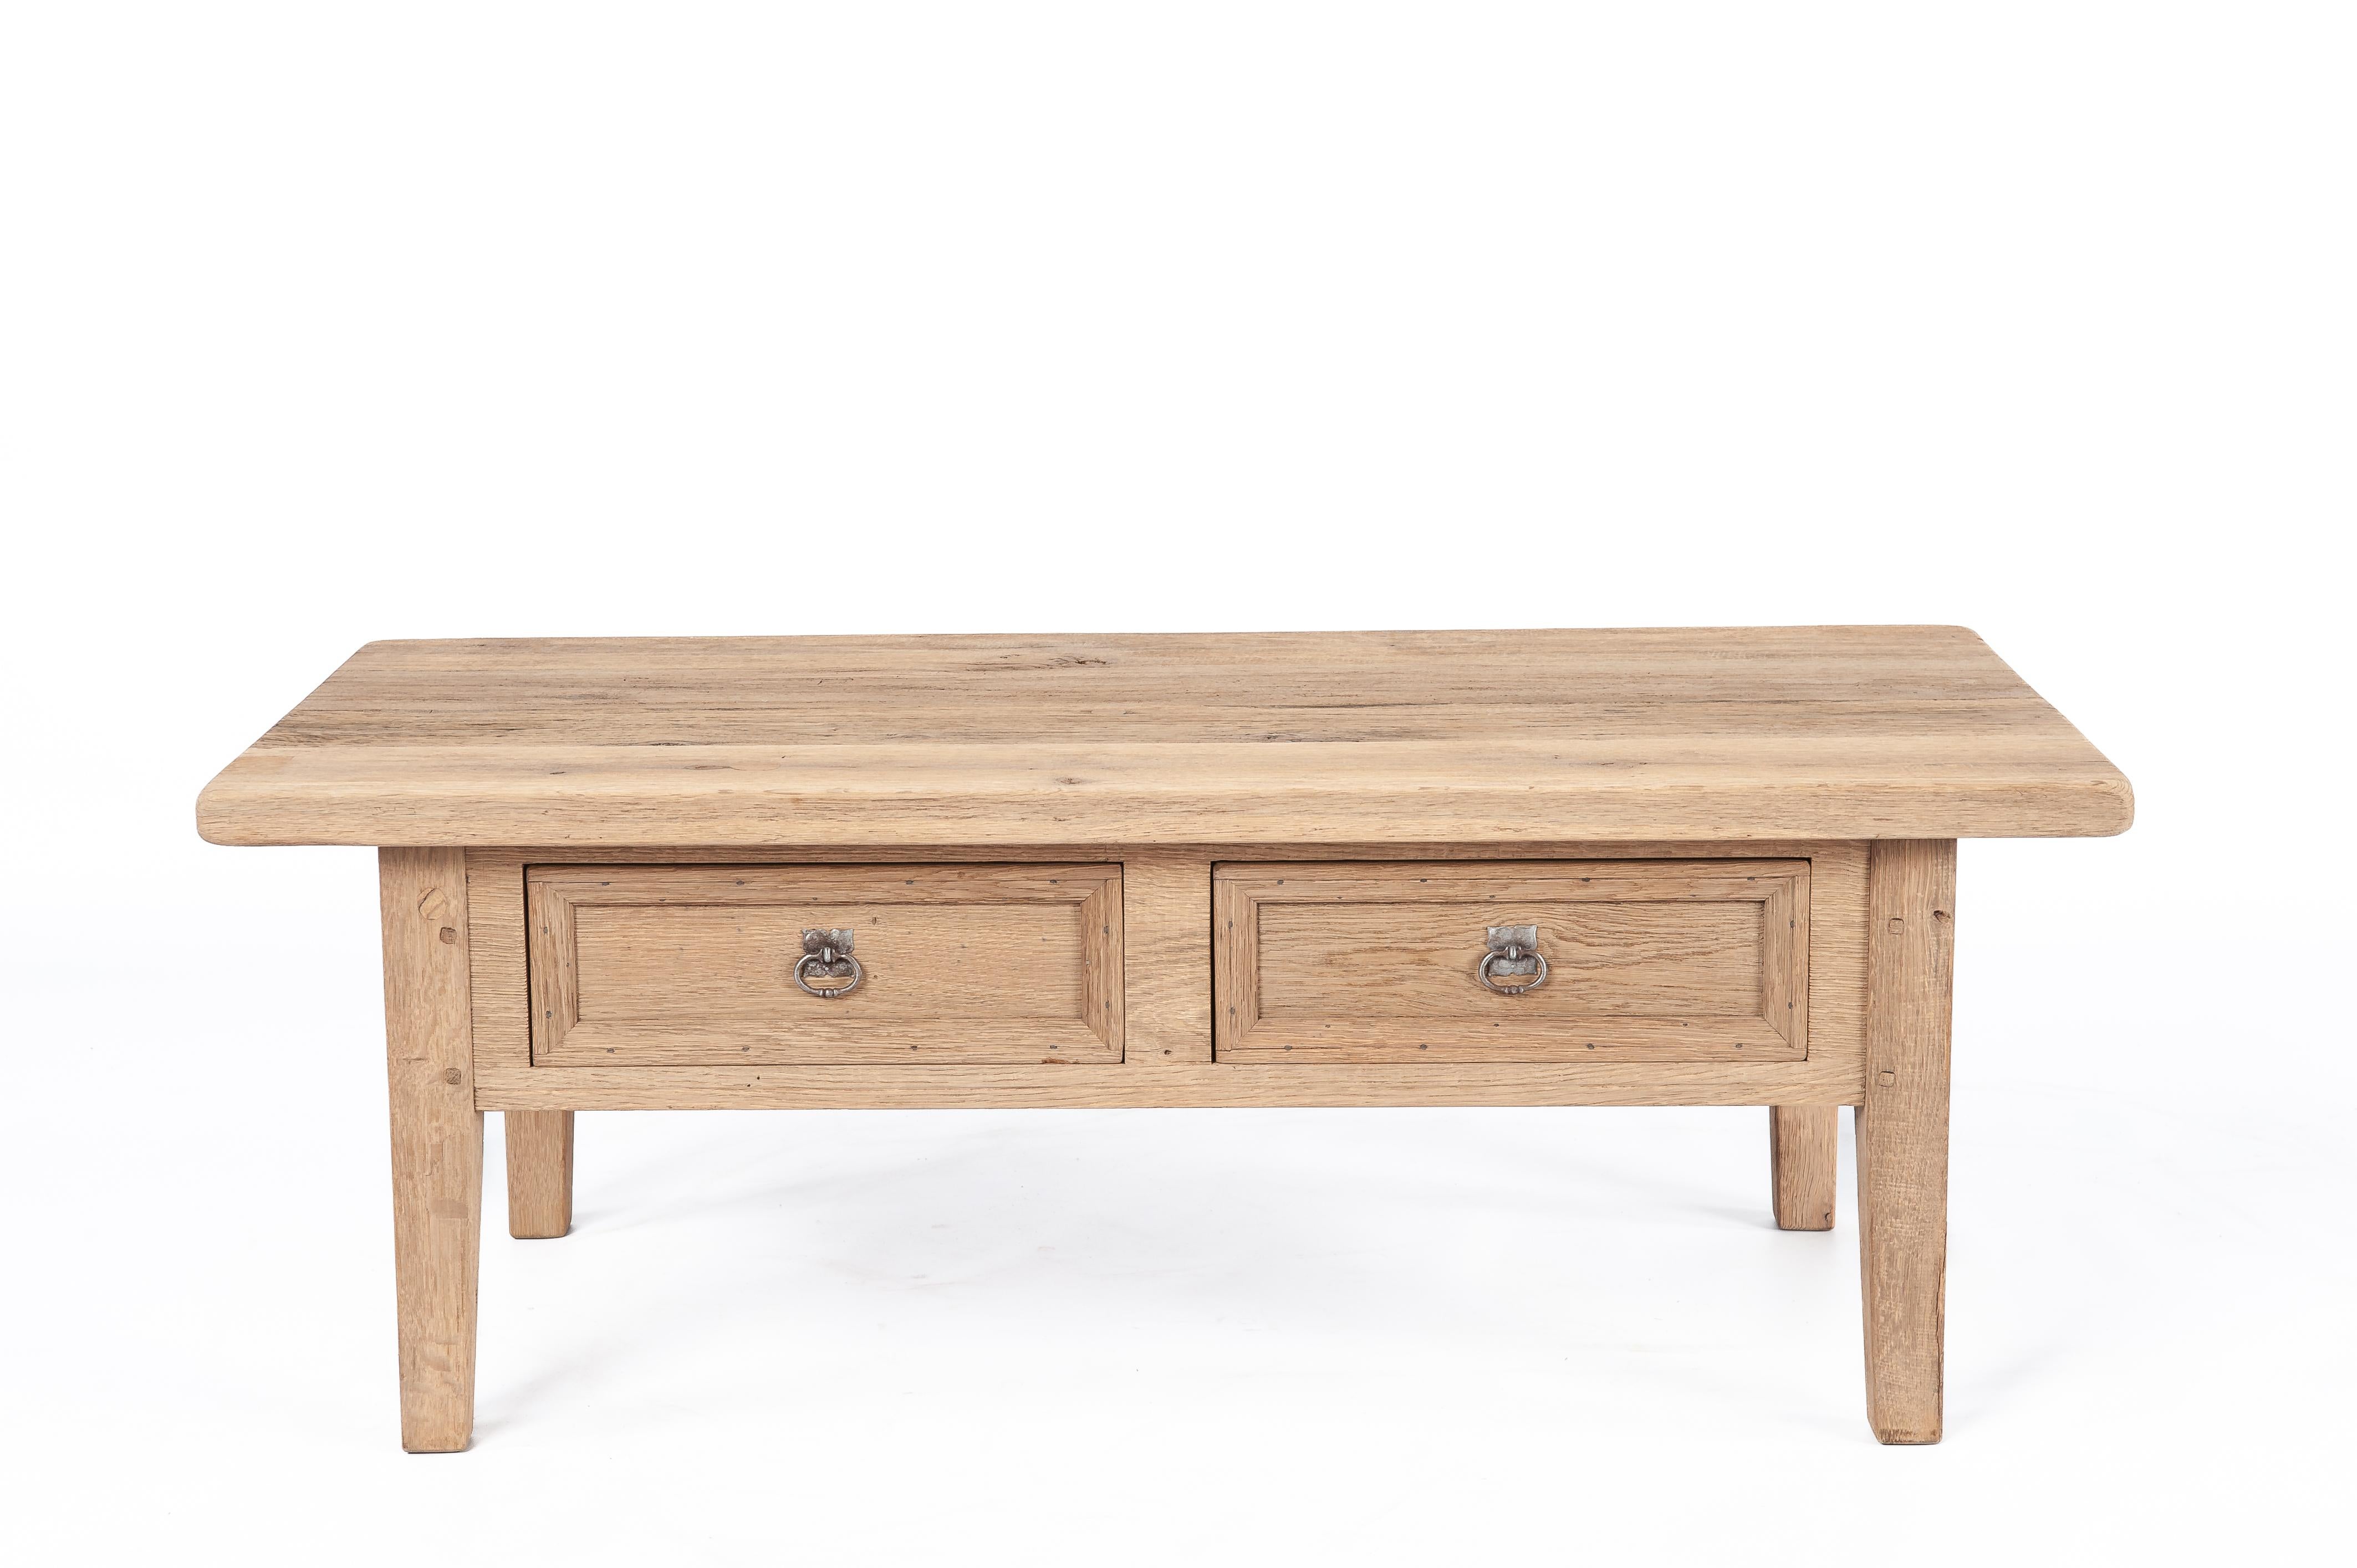 Il s'agit d'une table basse vintage intemporelle, traditionnellement fabriquée à partir de bois de chêne récupéré datant des années 1960. Cette pièce rustique a été fabriquée par l'atelier de meubles Piet Rombouts & Sons, un héritage que notre